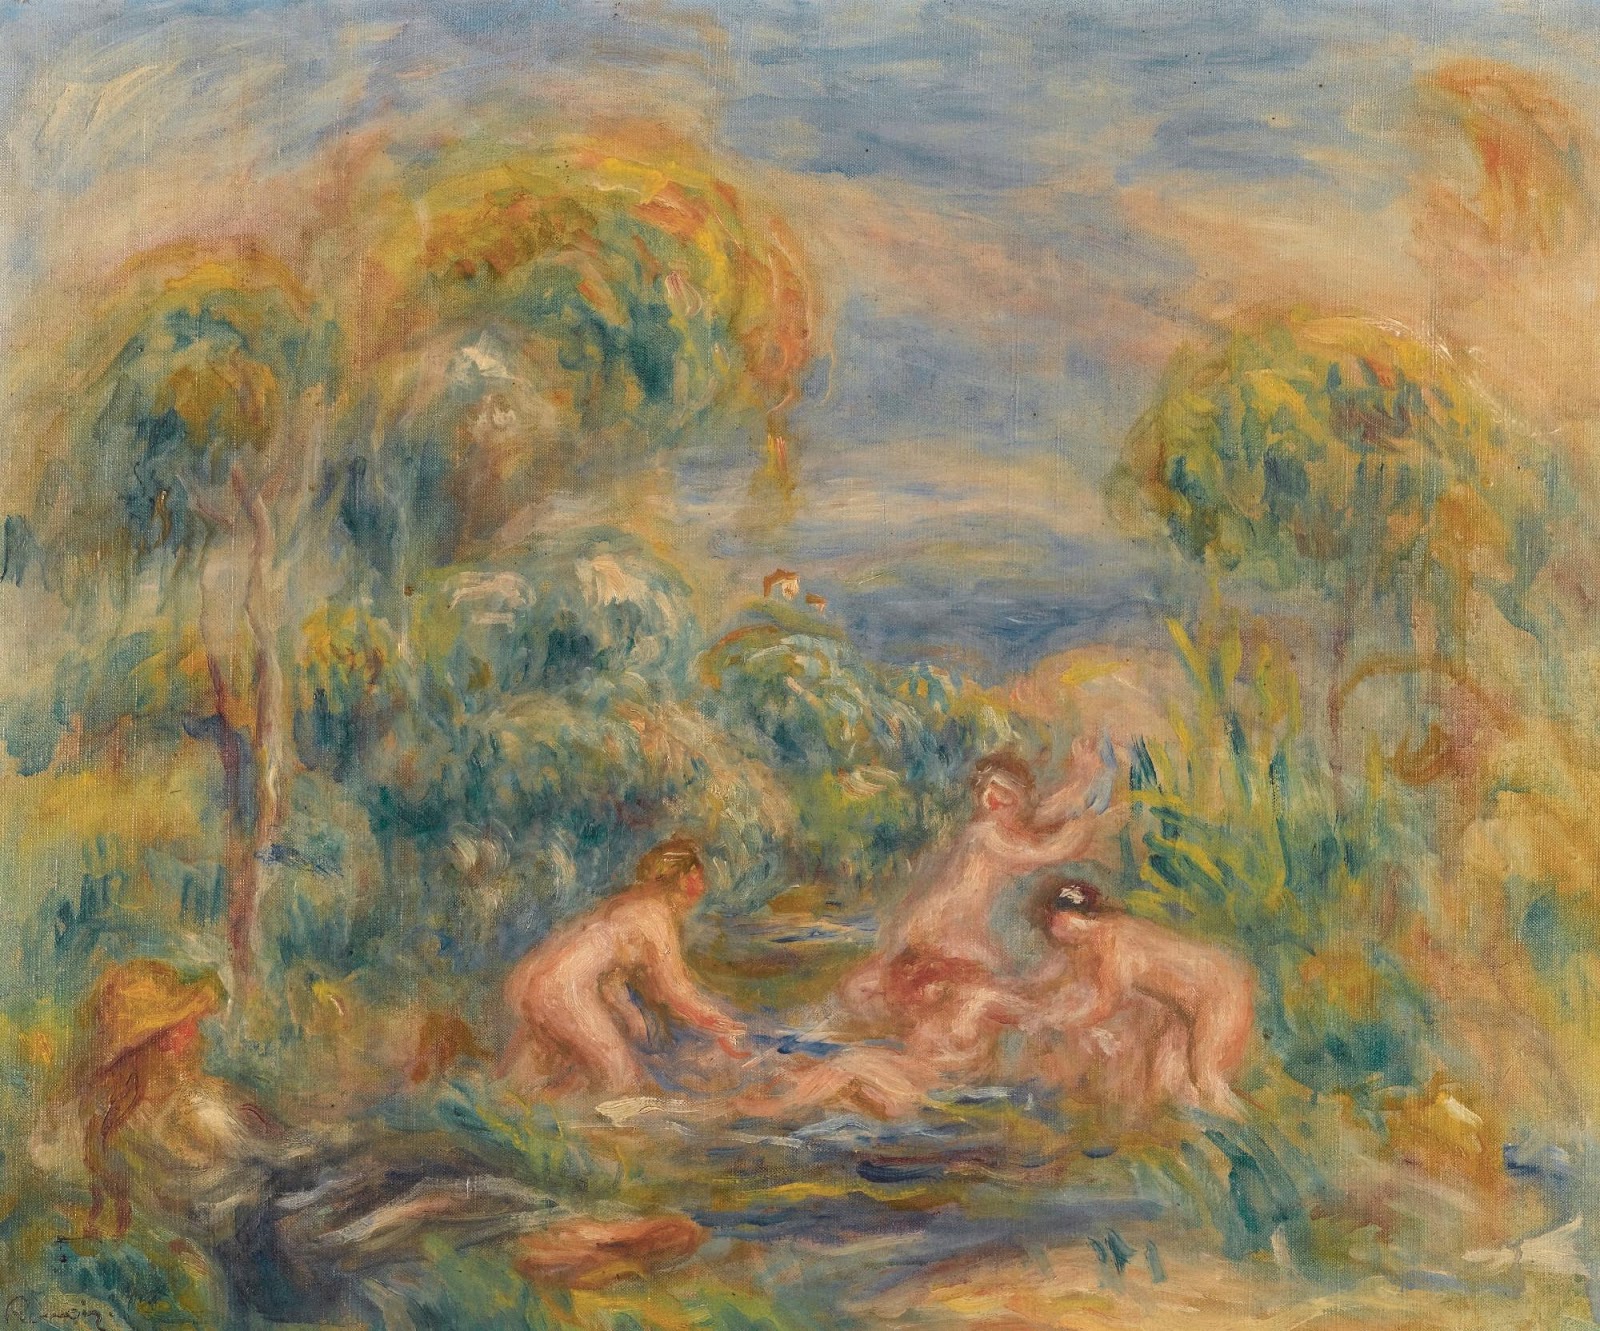 Pierre+Auguste+Renoir-1841-1-19 (736).jpg